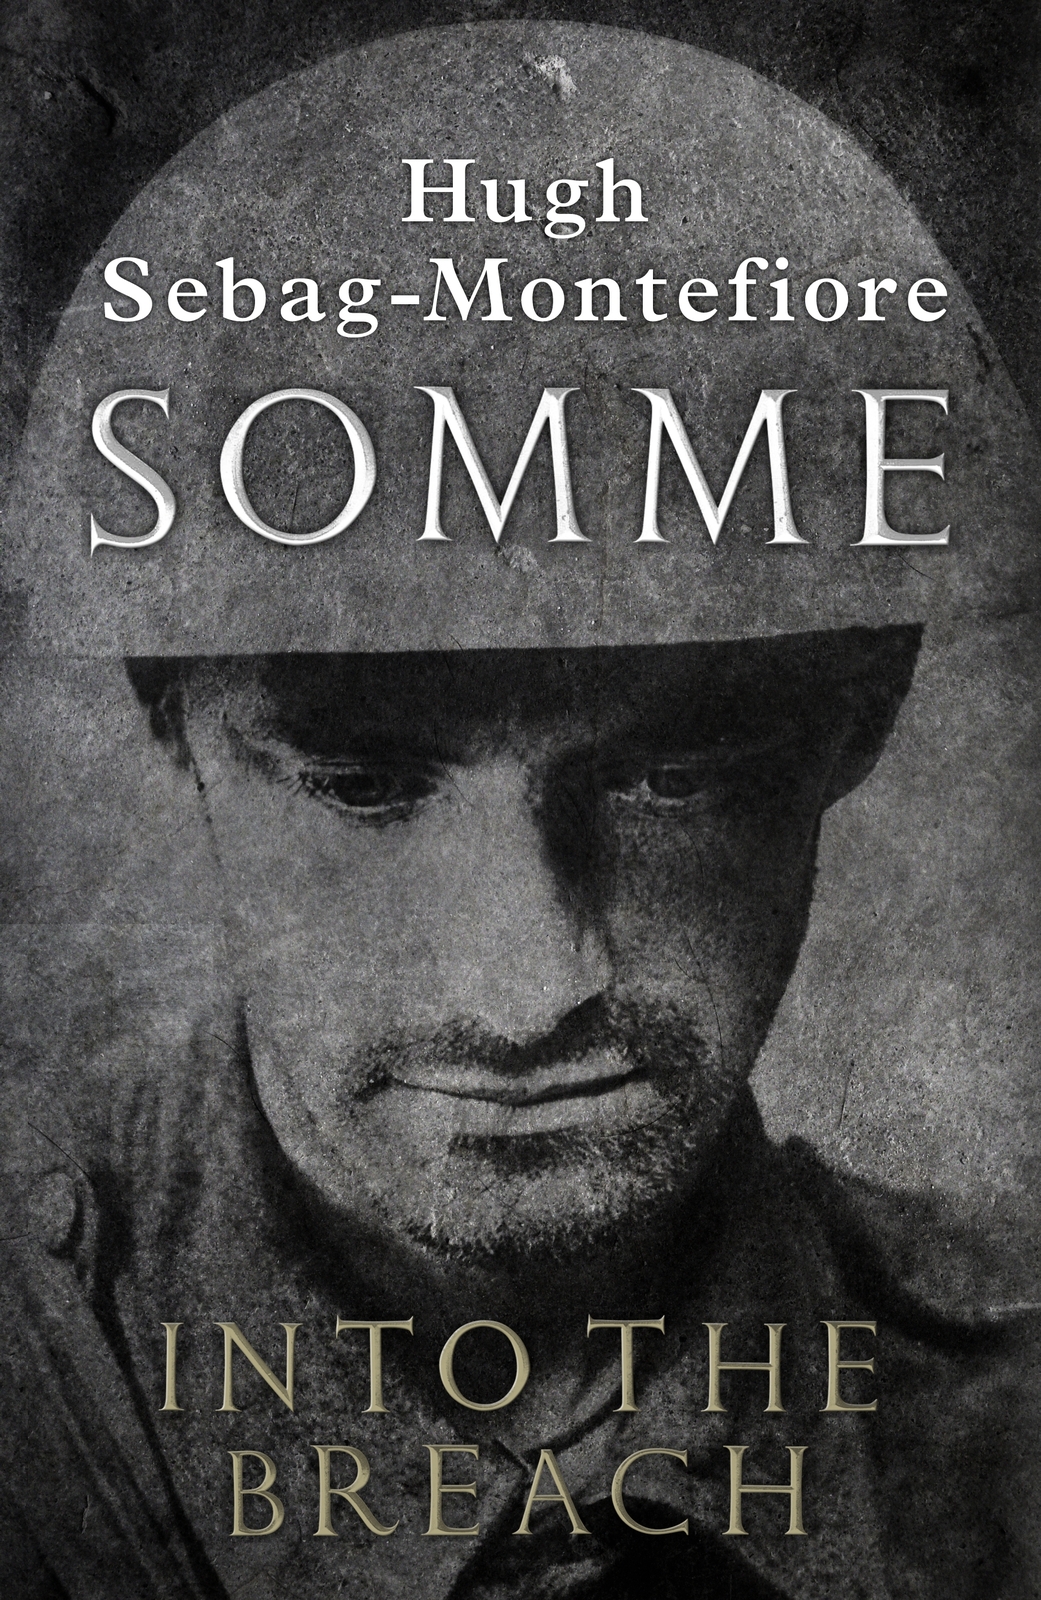 Contents Hugh Sebag-Montefiore SOMME Into the Breach - photo 1